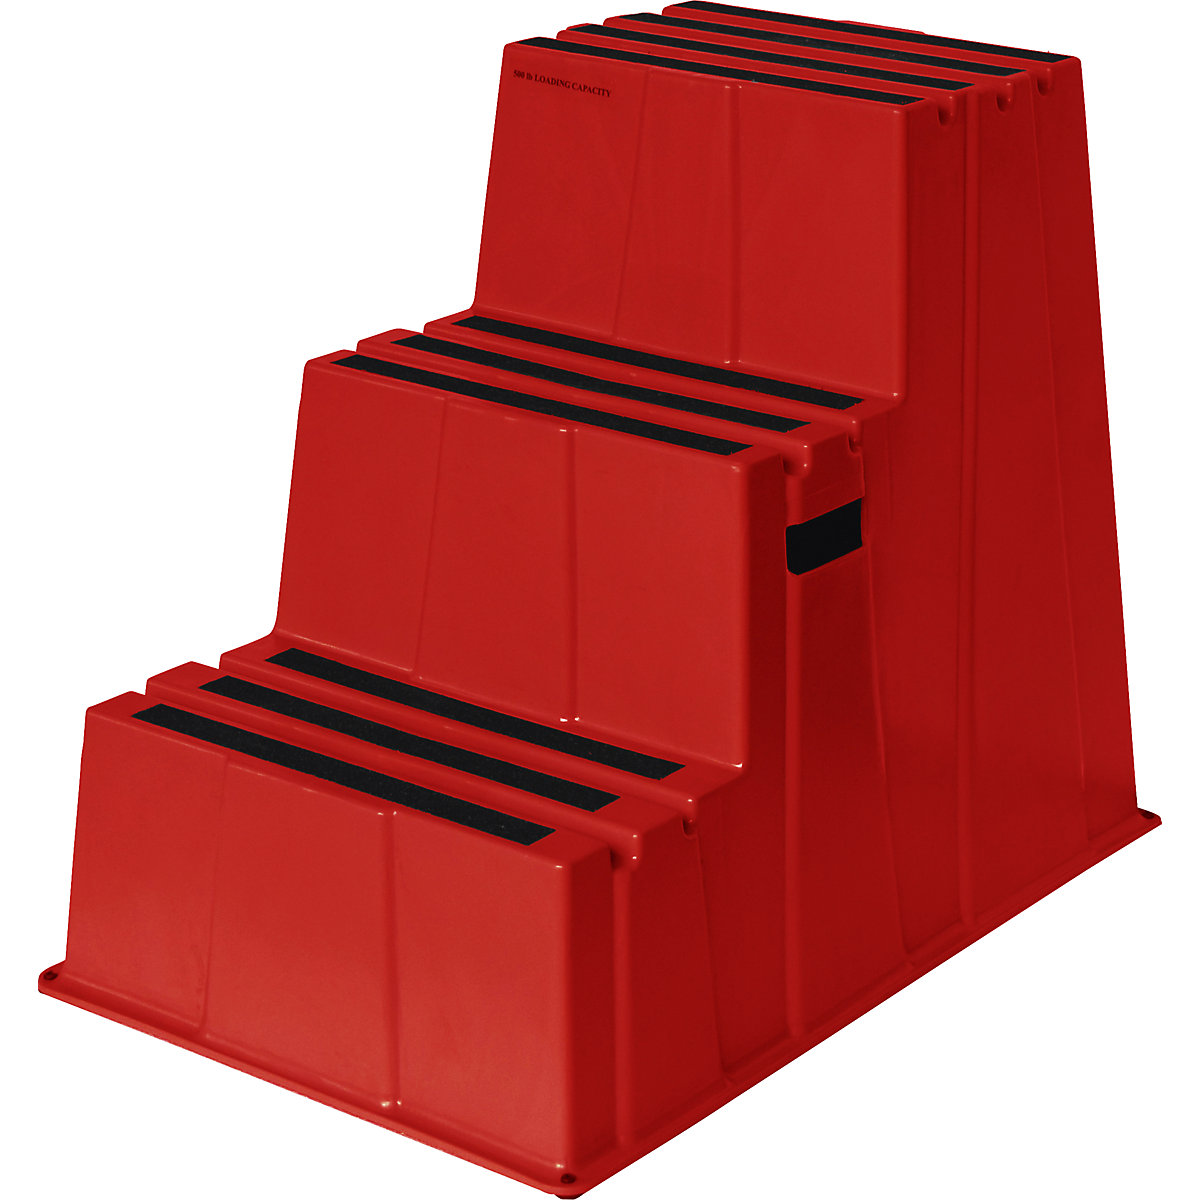 Scară din plastic cu trepte antiderapante – Twinco, capacitate portantă 150 kg, 3 trepte, roșu-1